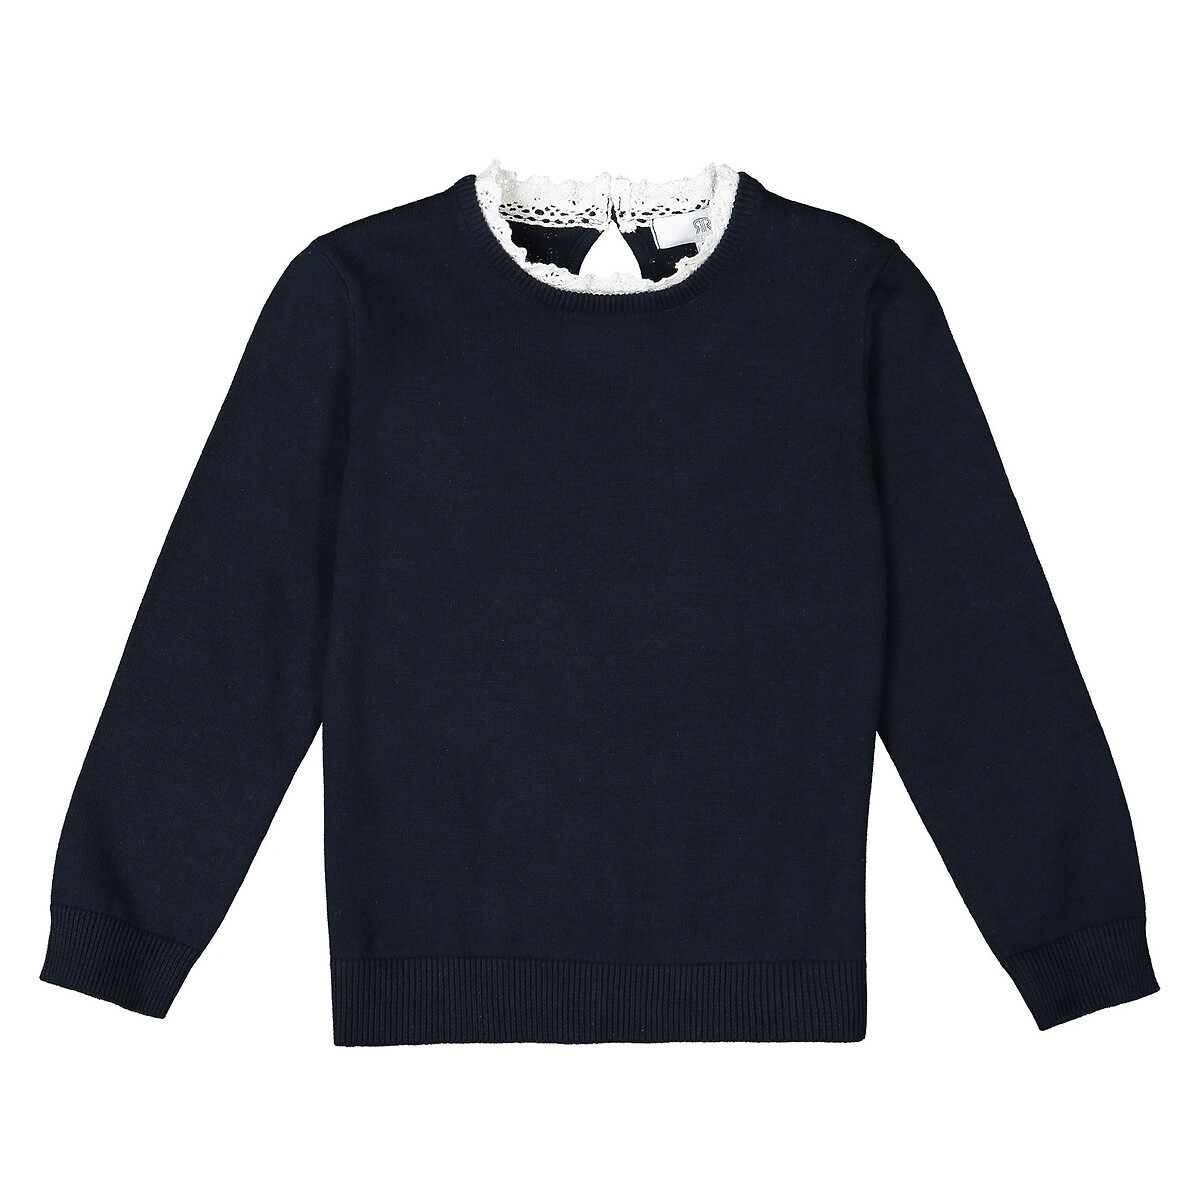 Пуловер La Redoute С эффектом  в  воротник связан крючком  8 лет - 126 см синий, размер 8 лет - 126 см - фото 2